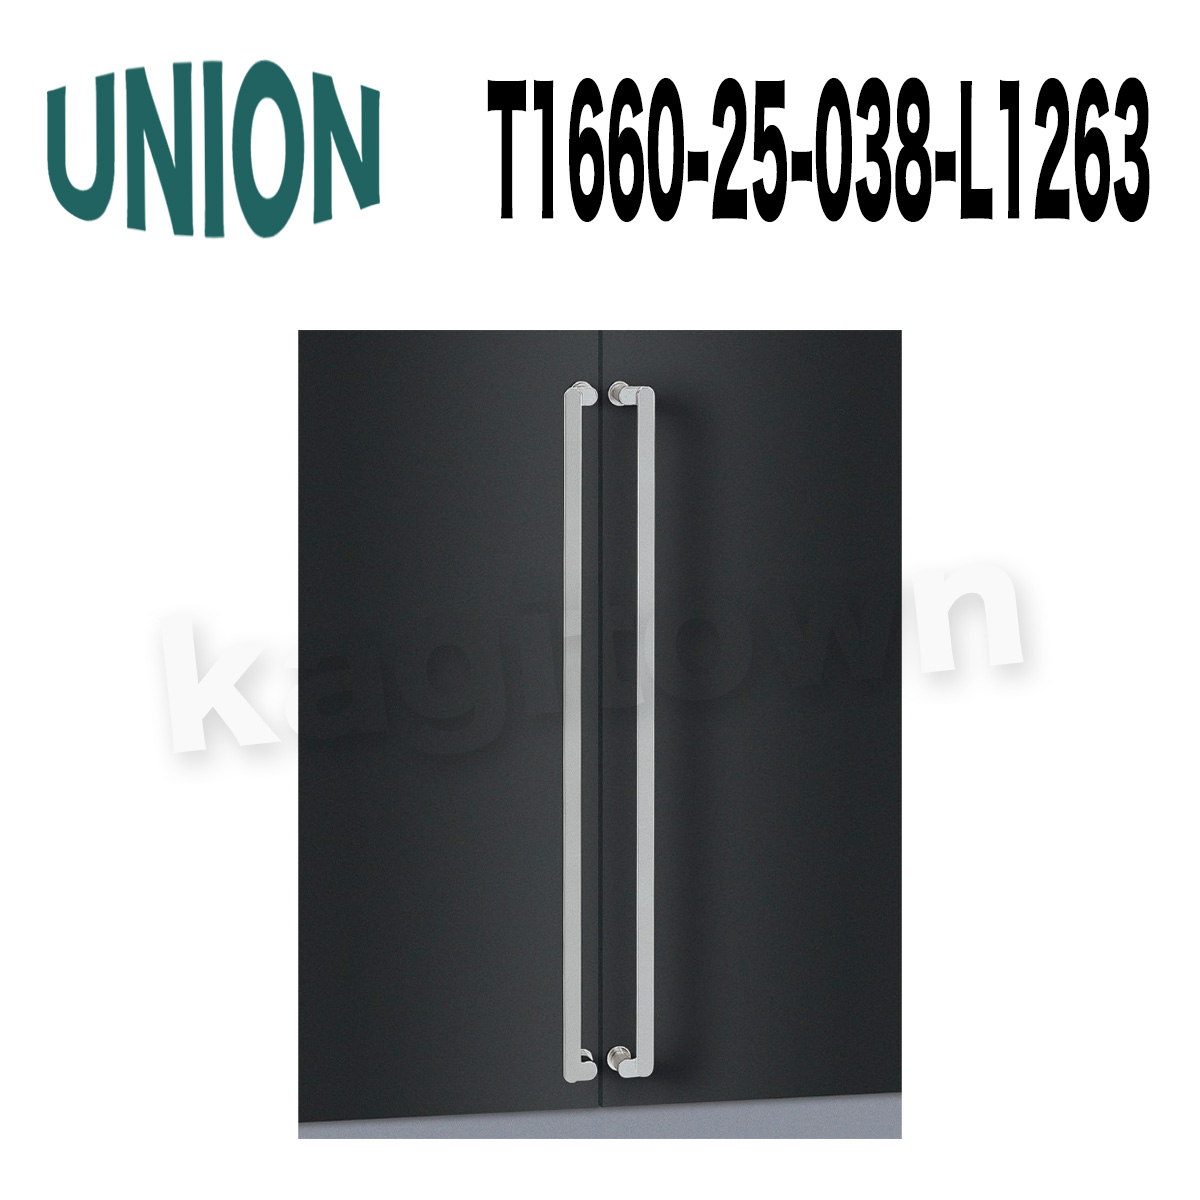 UNION【ユニオン】T1660-25-038-L600[ドアハンドル] 押し棒 1セット